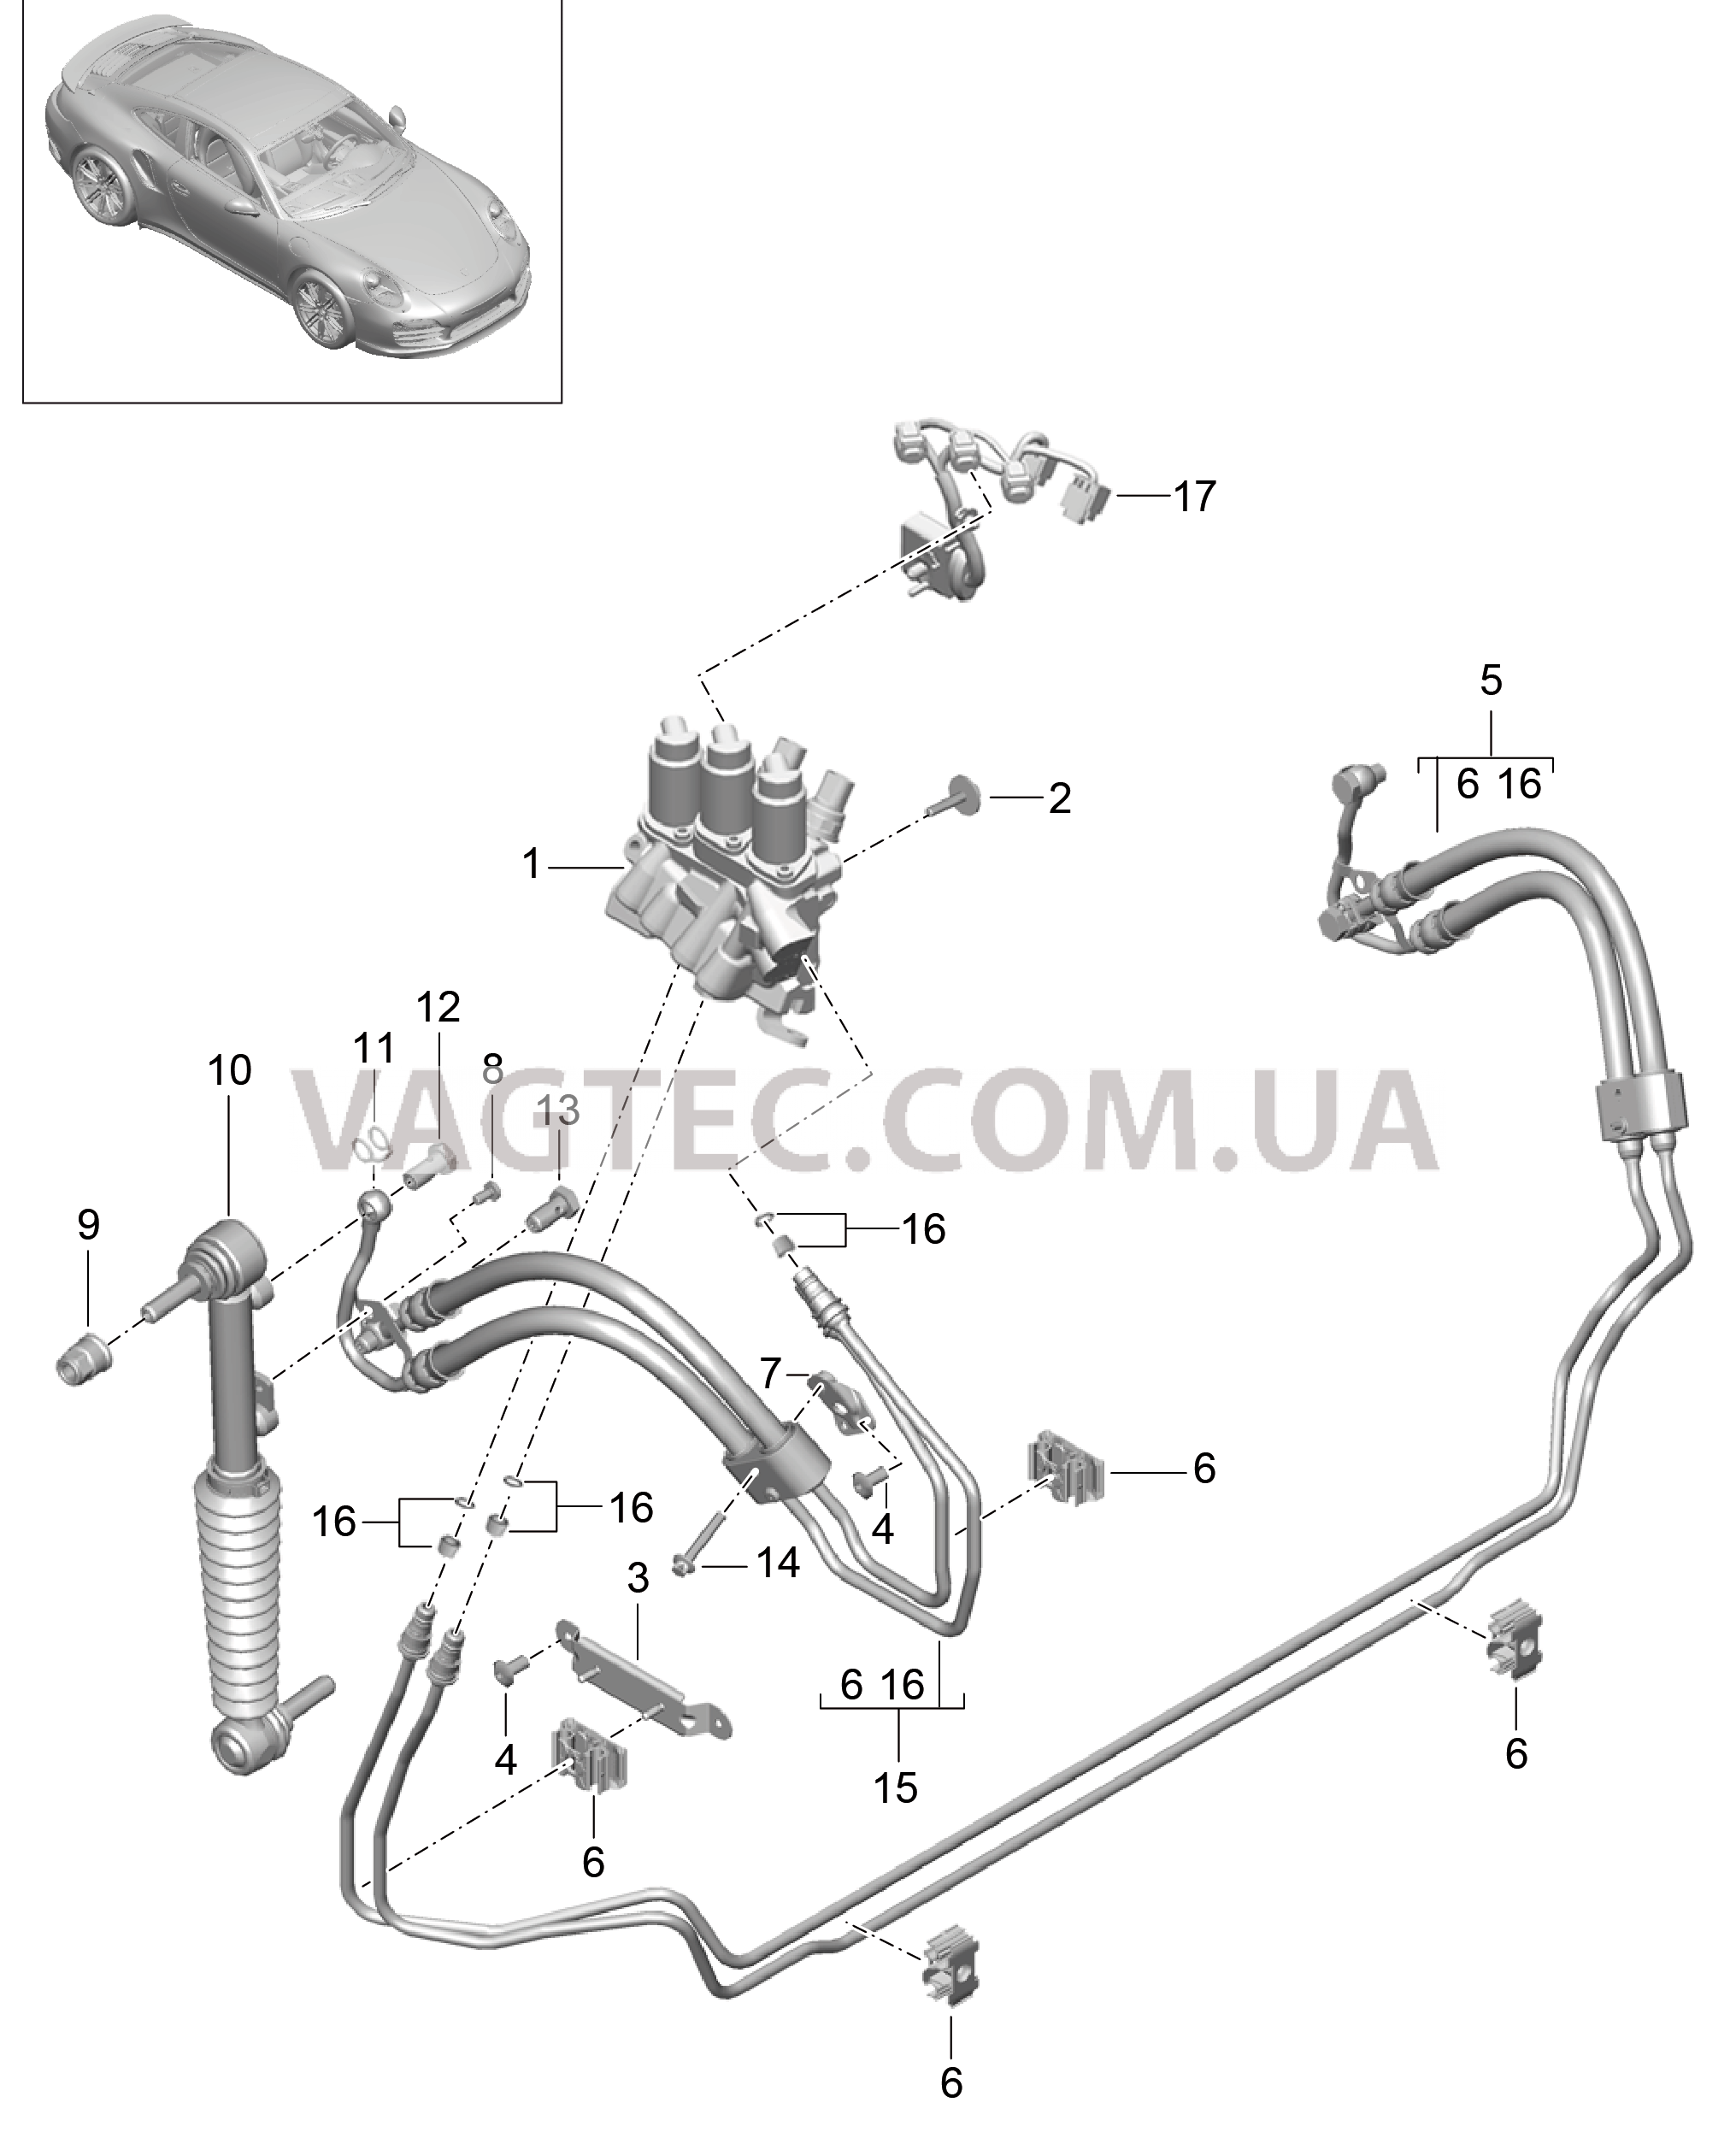 402-032 Линии, Передняя часть кузова, Амортизатор, PDCC
						
						I031/352 для PORSCHE Porsche991Turbo 2014-2017